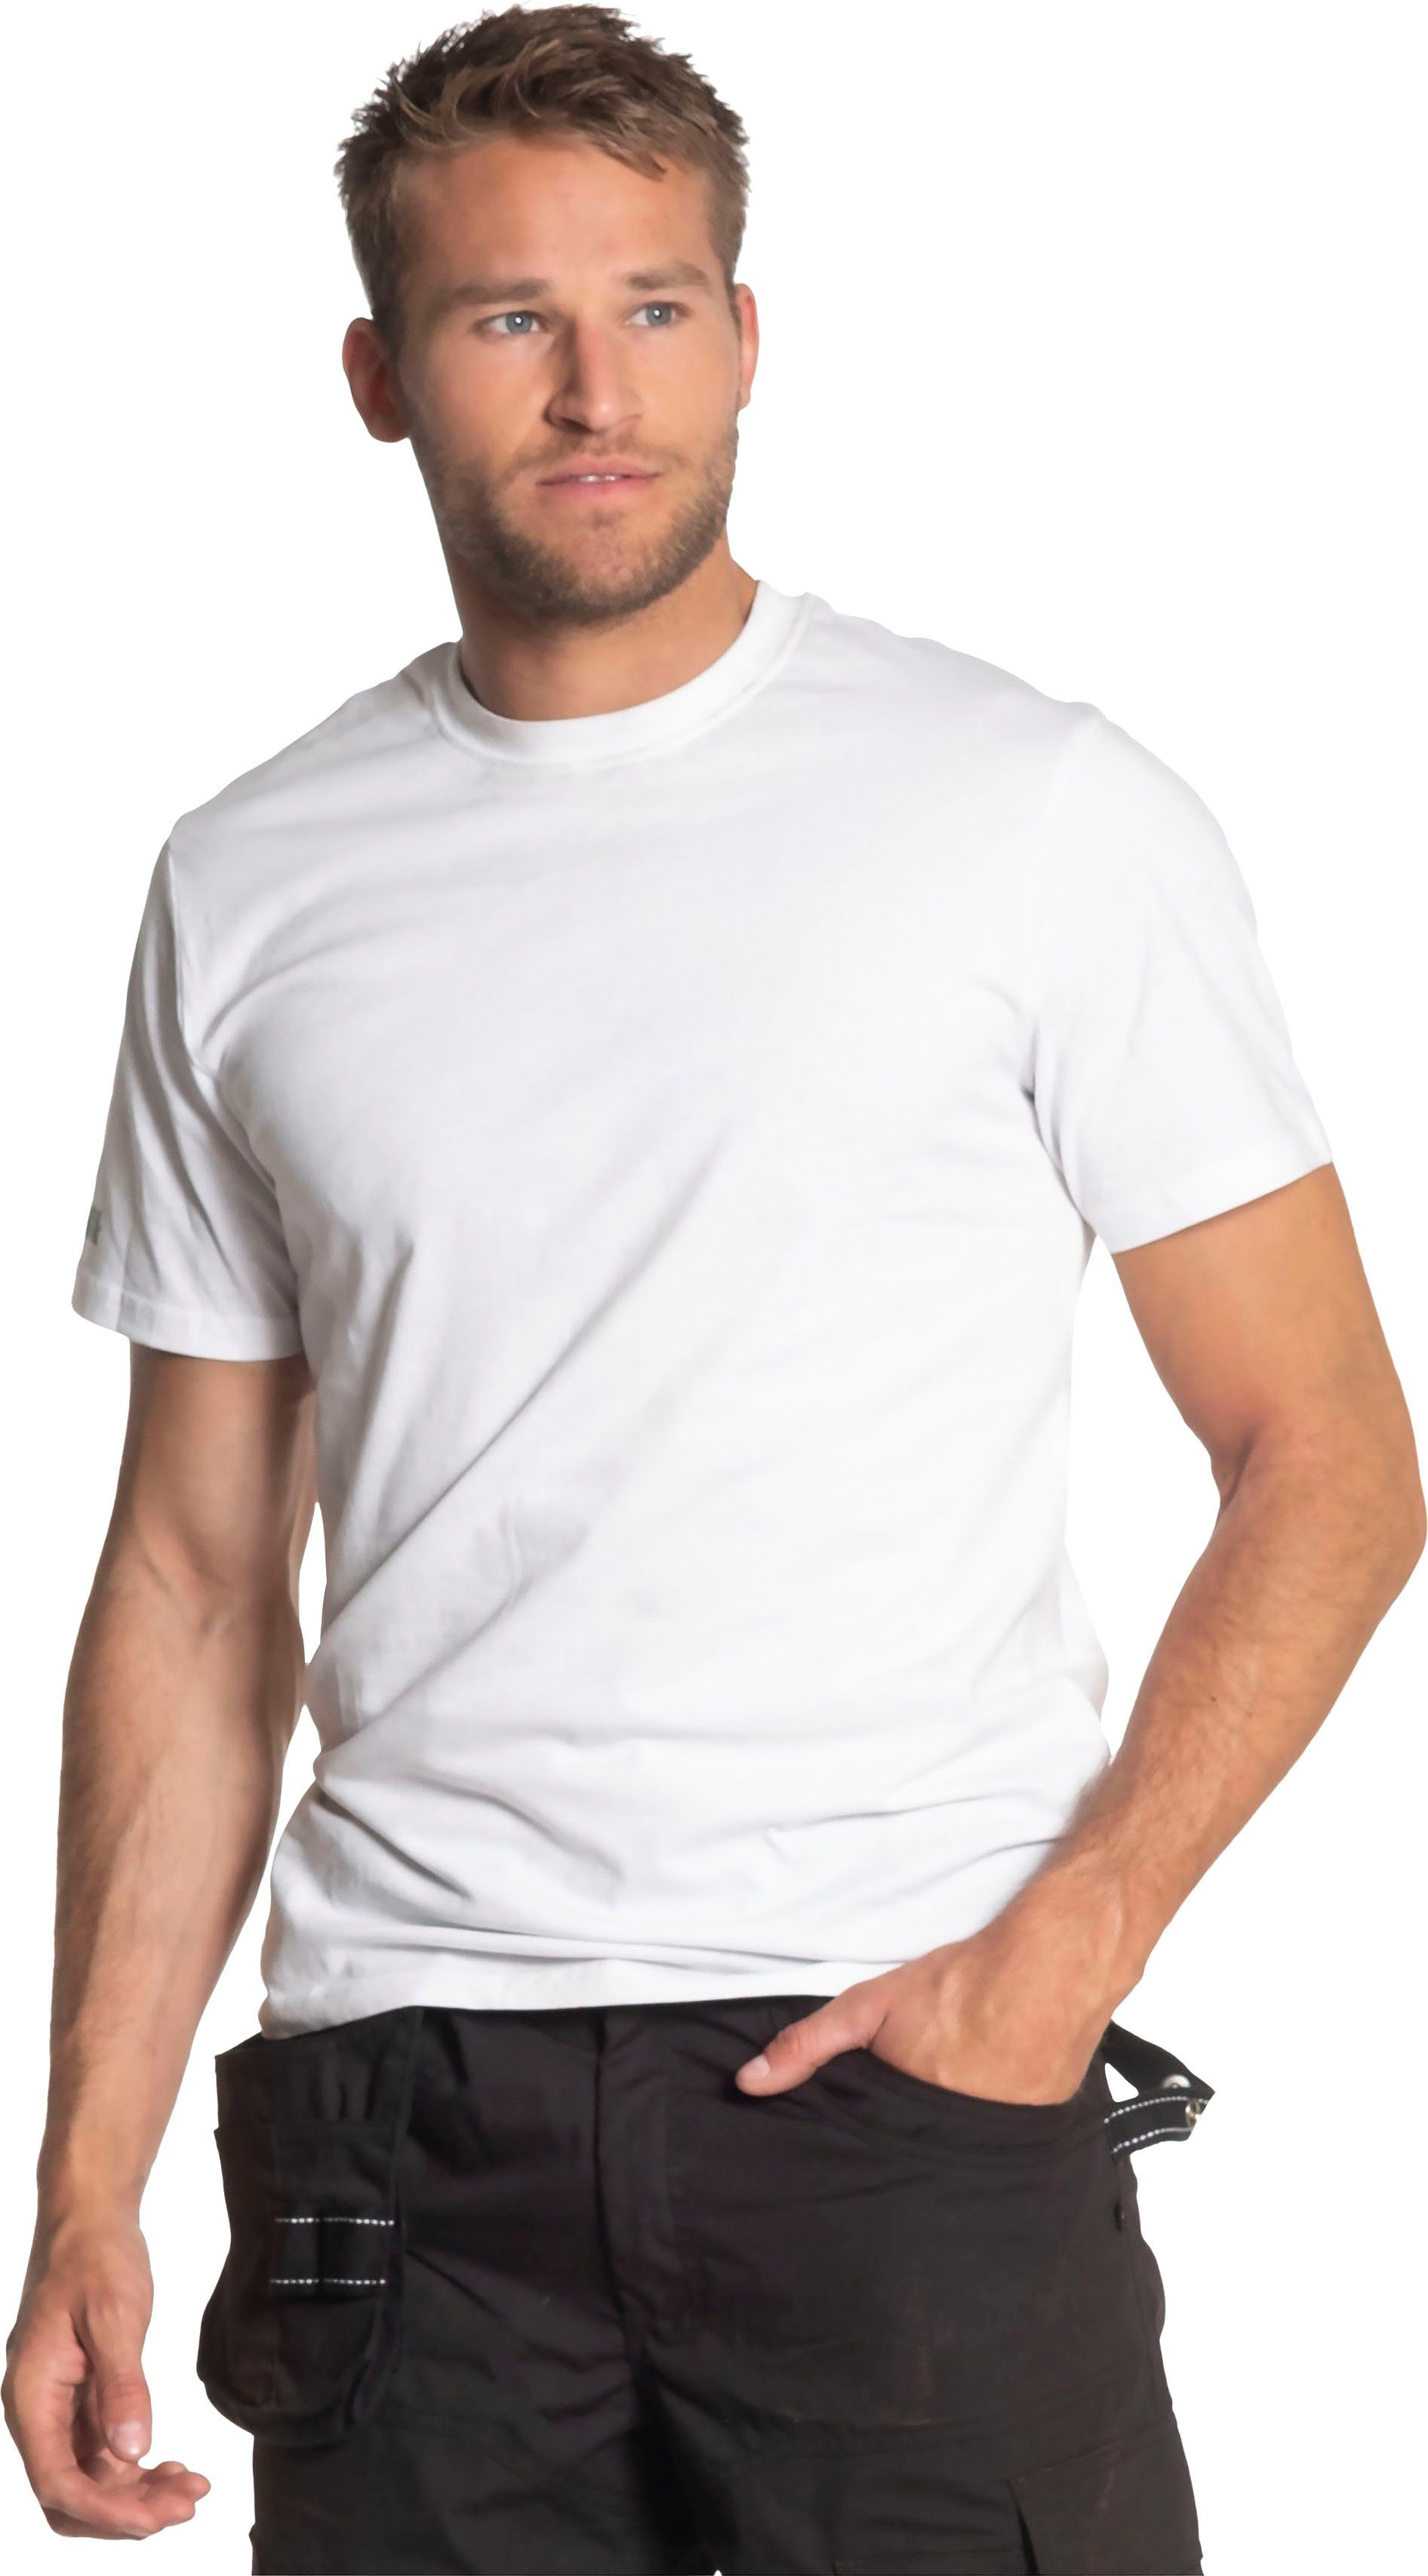 T-Shirt Herock Rundhalsausschnitt, Callius weiß Rippstrickkragen kurze Ärmel Herock®-Aufdruck, T-Shirt Ärmel, kurze